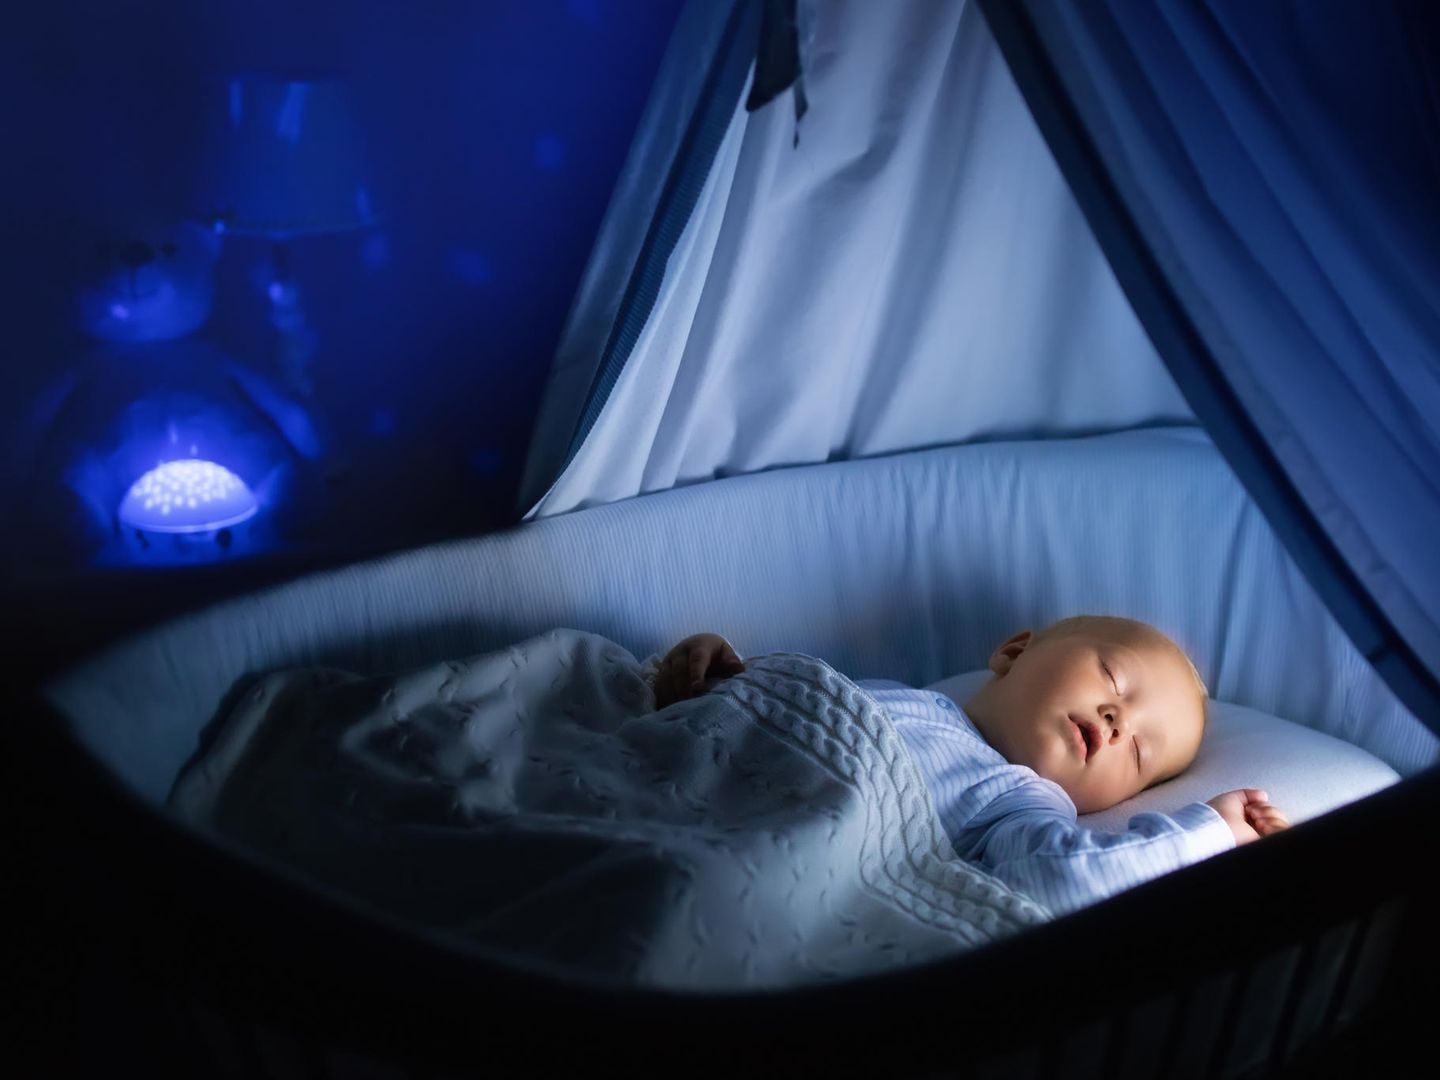 Schlafen in der Babyschale? Das kann gefährlich werden!